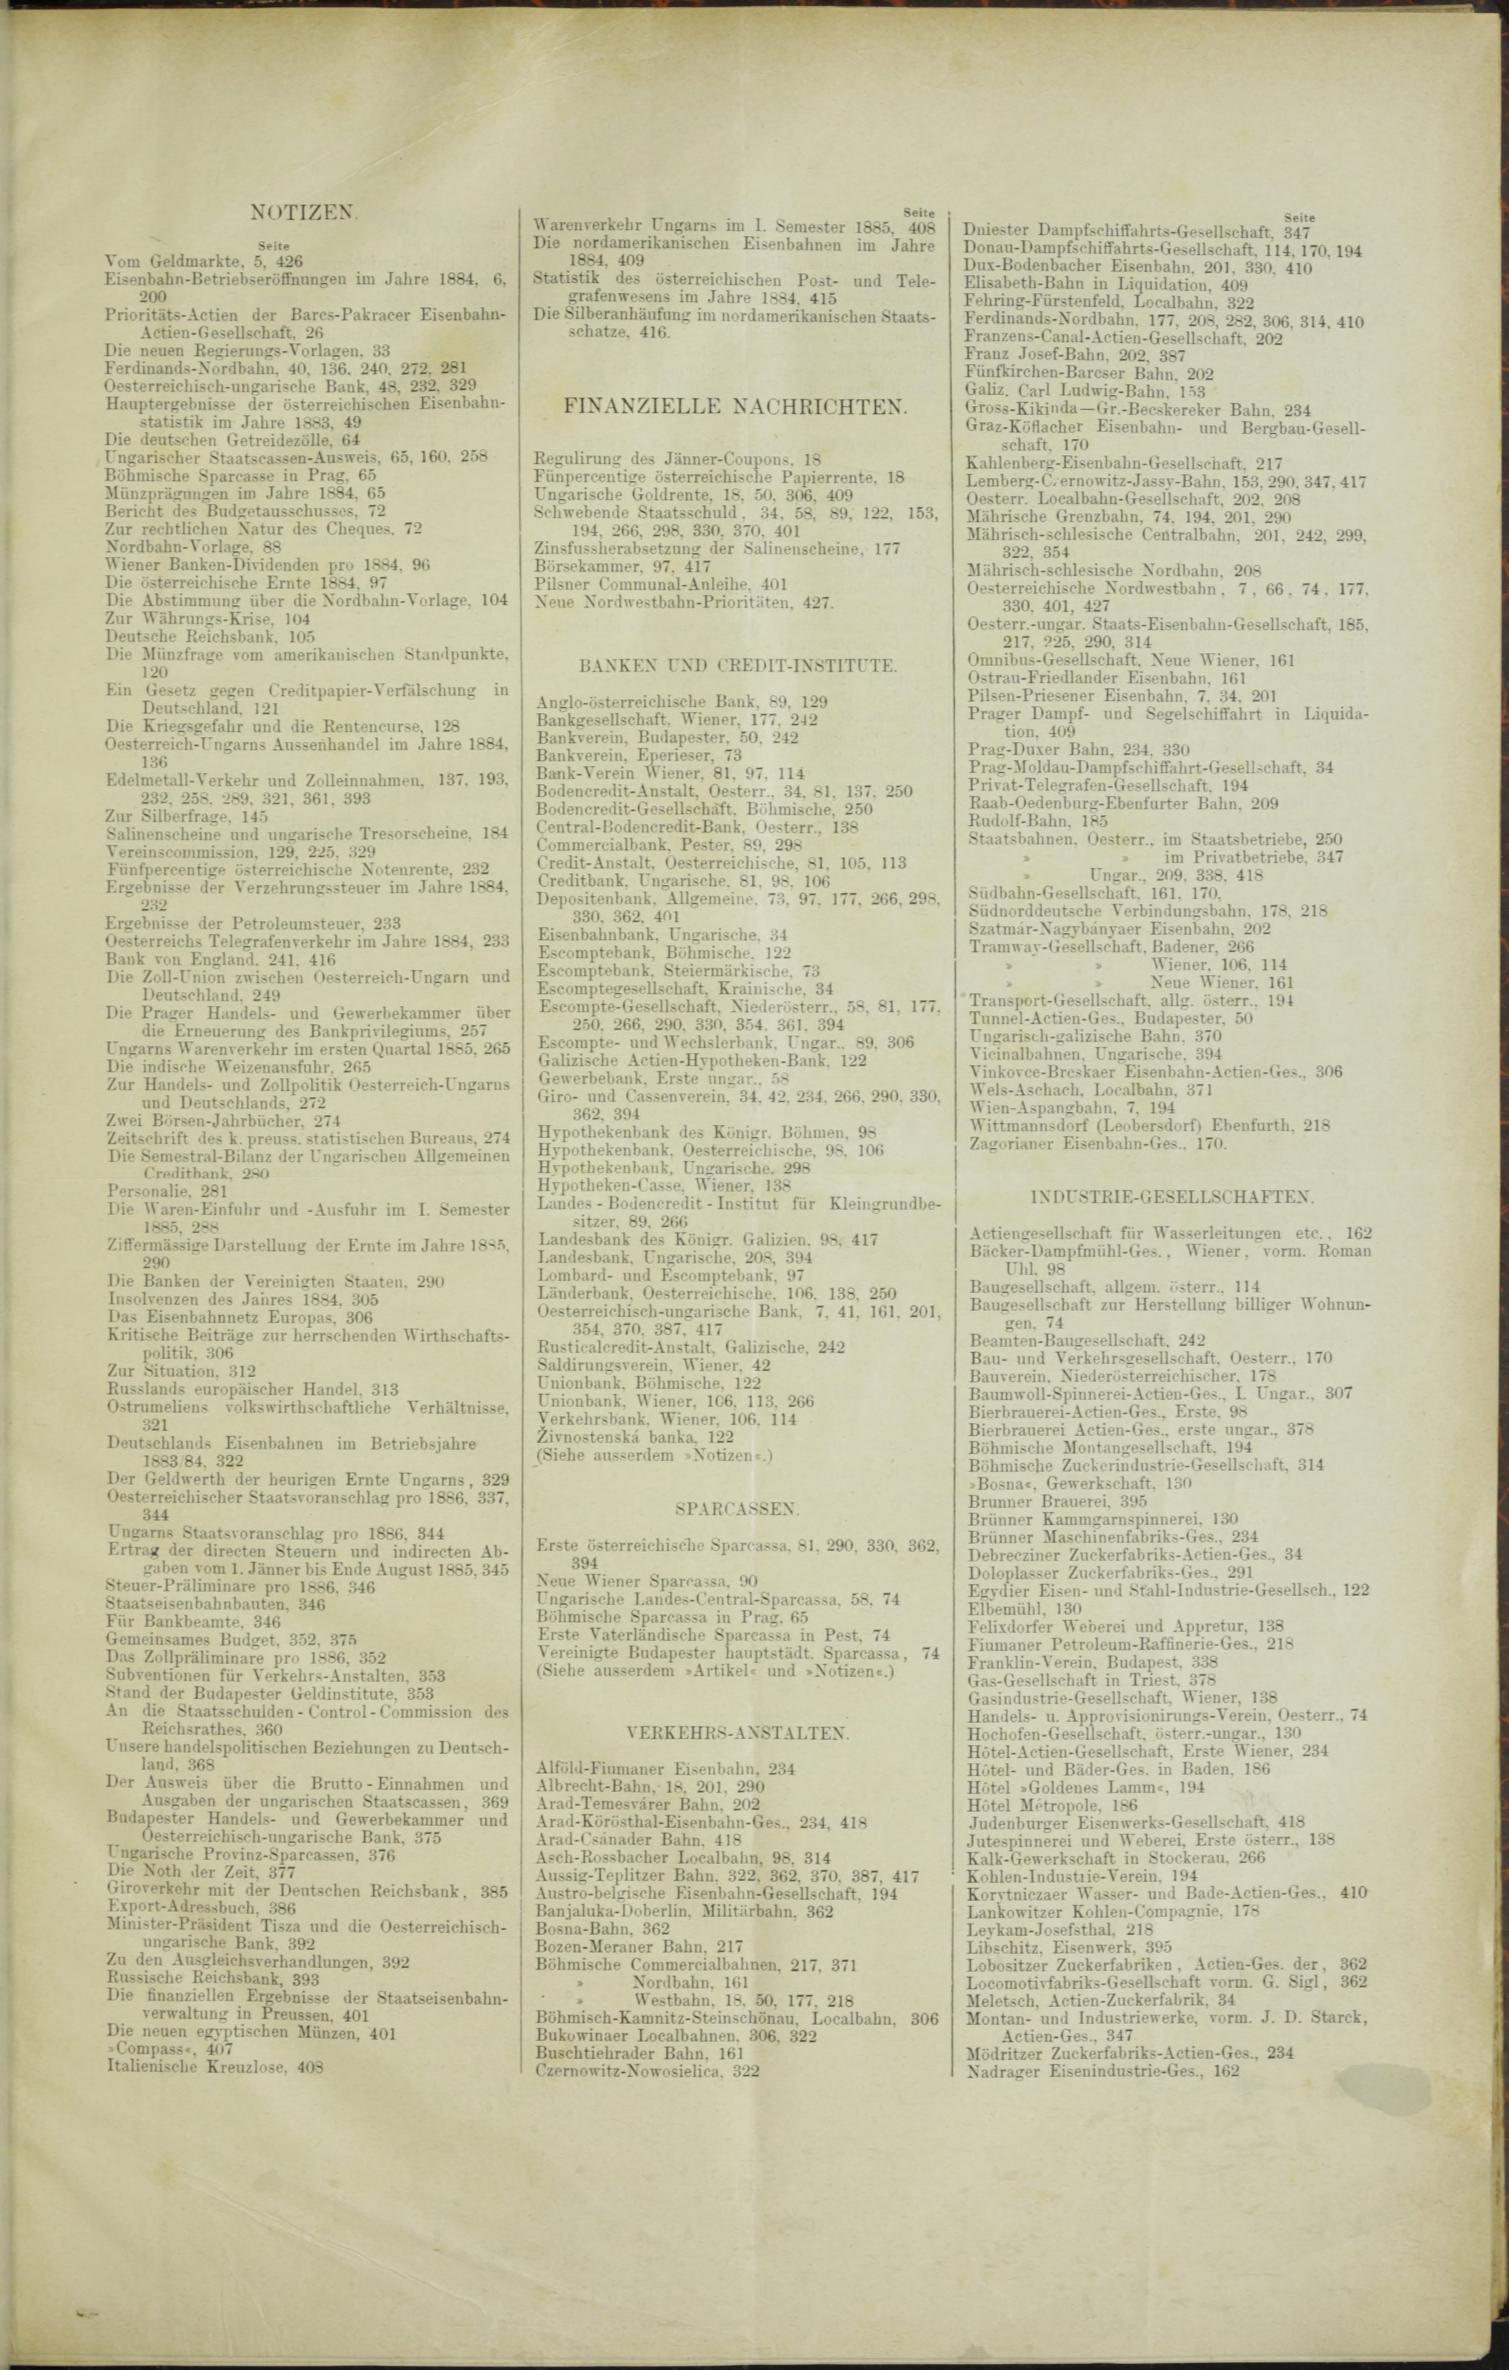 Der Tresor 02.04.1885 - Seite 11